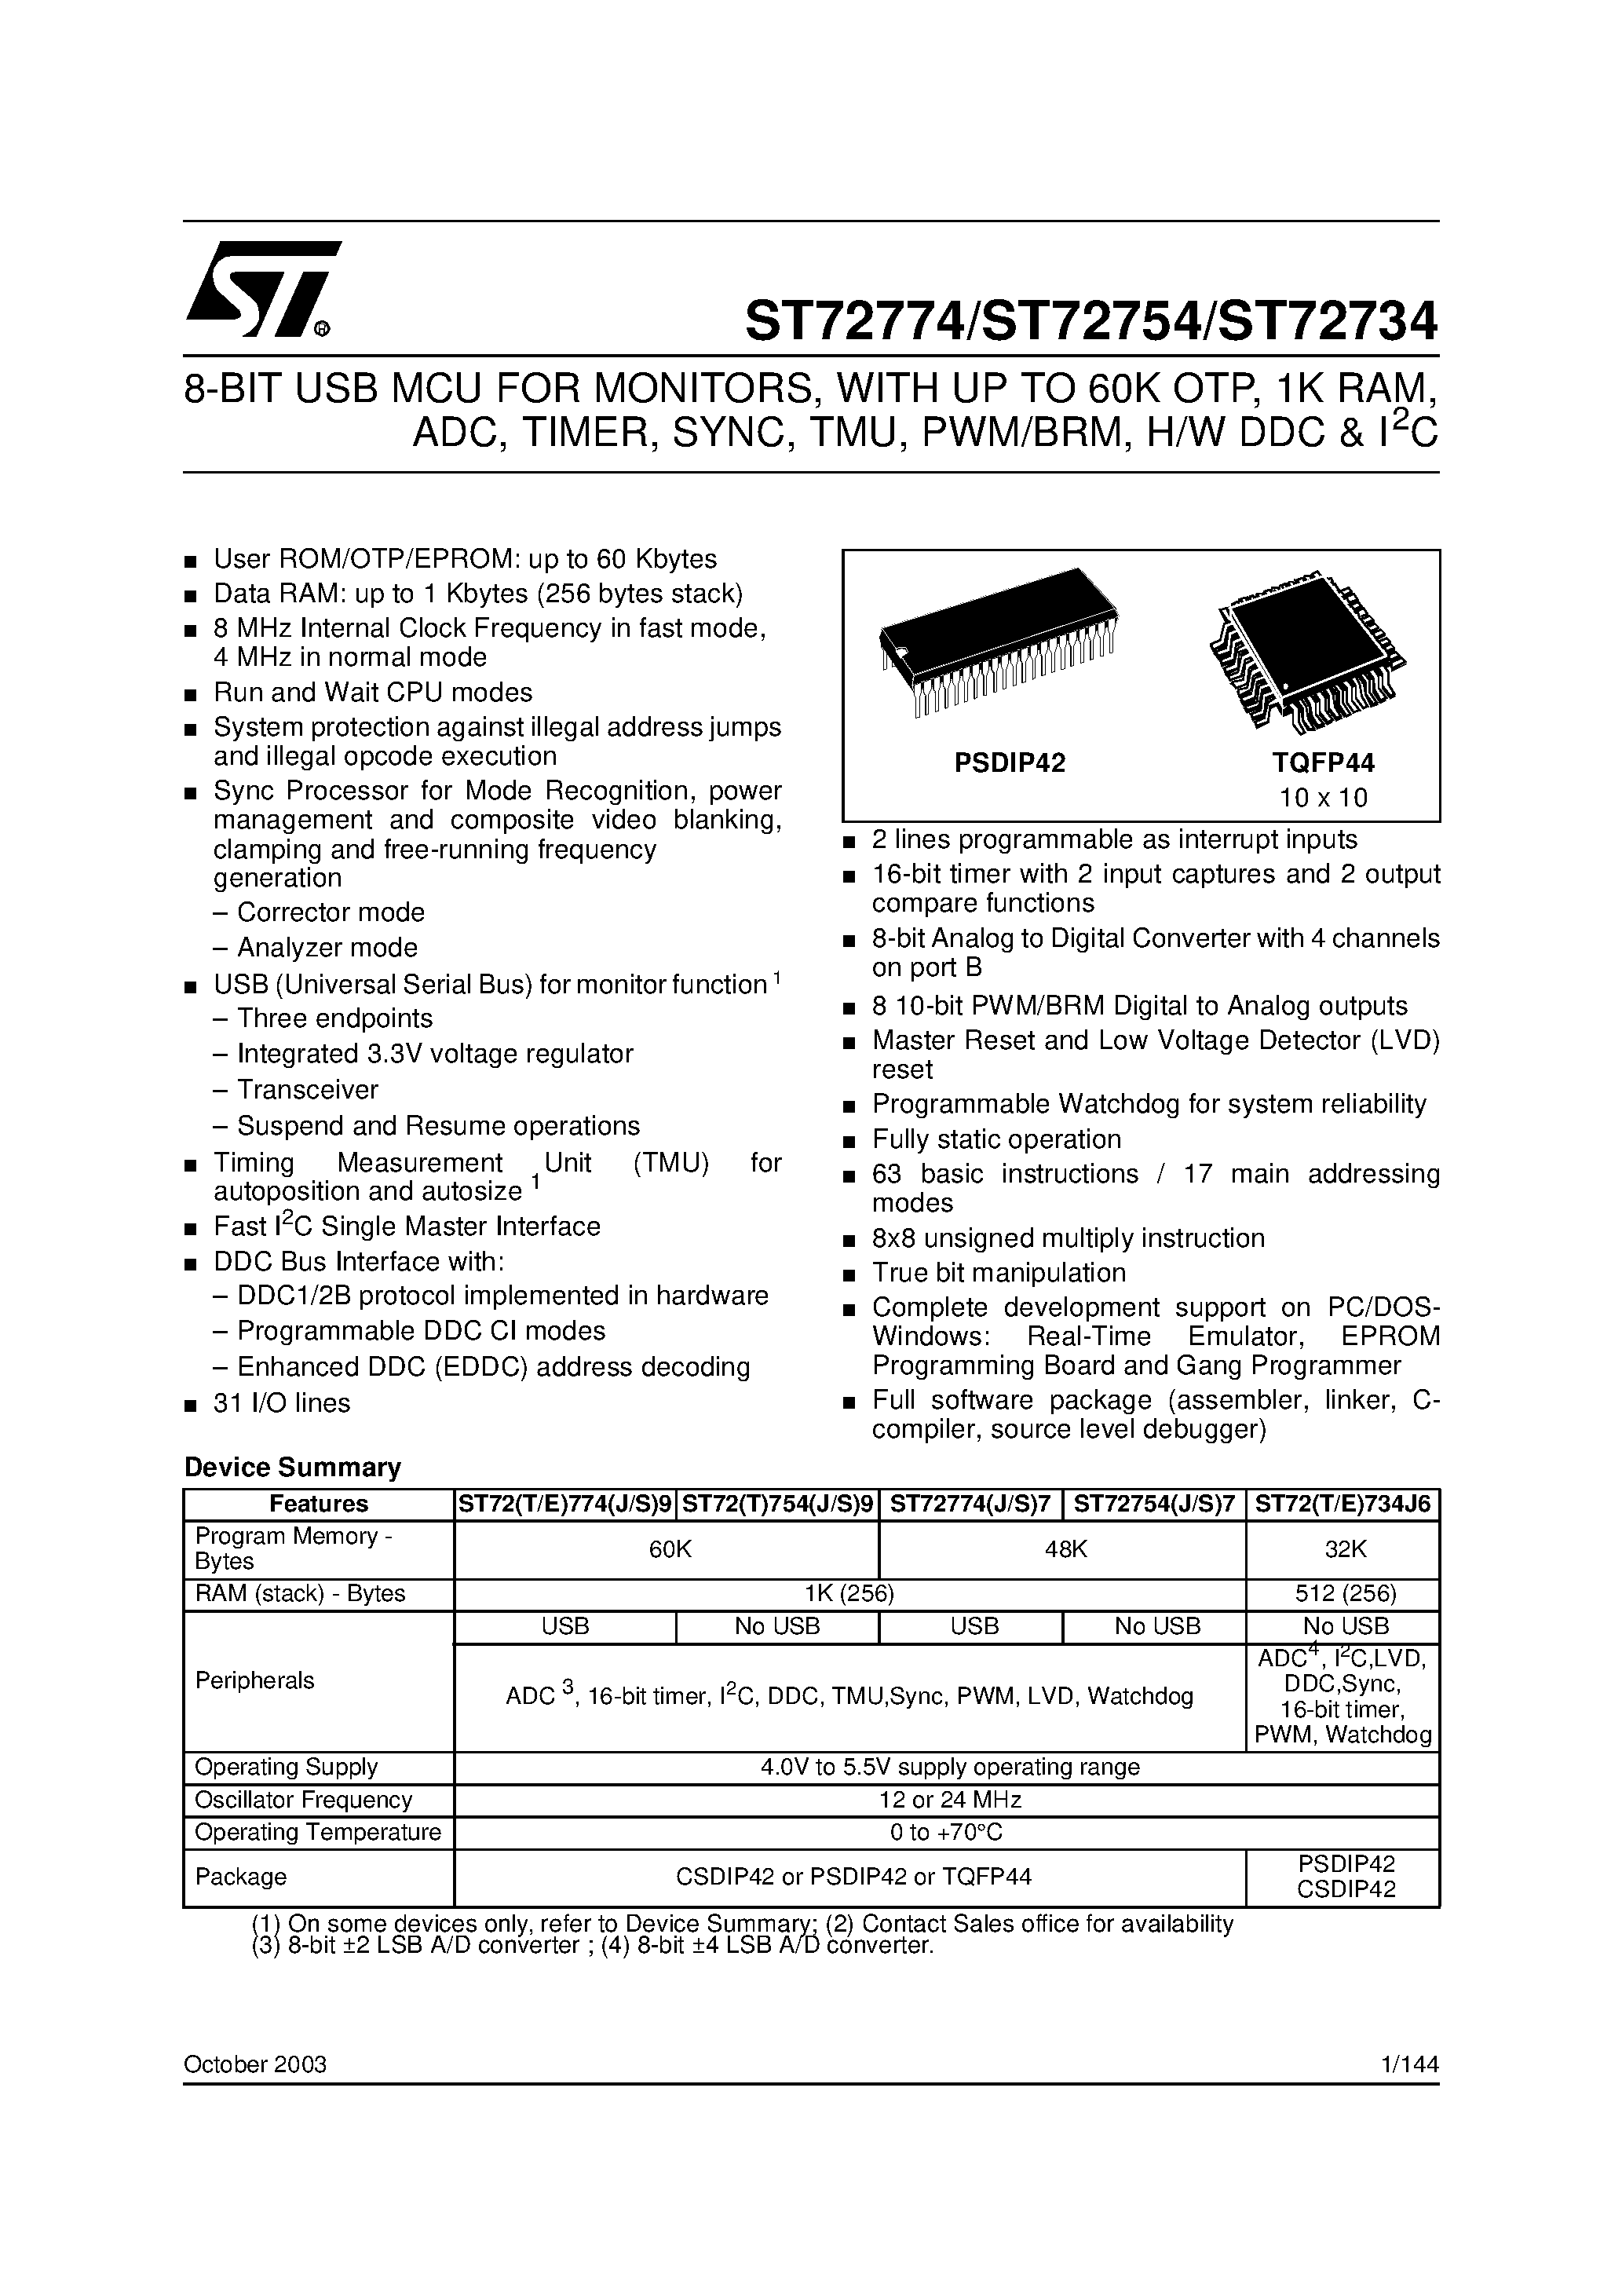 Даташит ST72734 - (ST72T774 - ST72T734) 8-BIT USB MCU FOR MONITORS страница 1